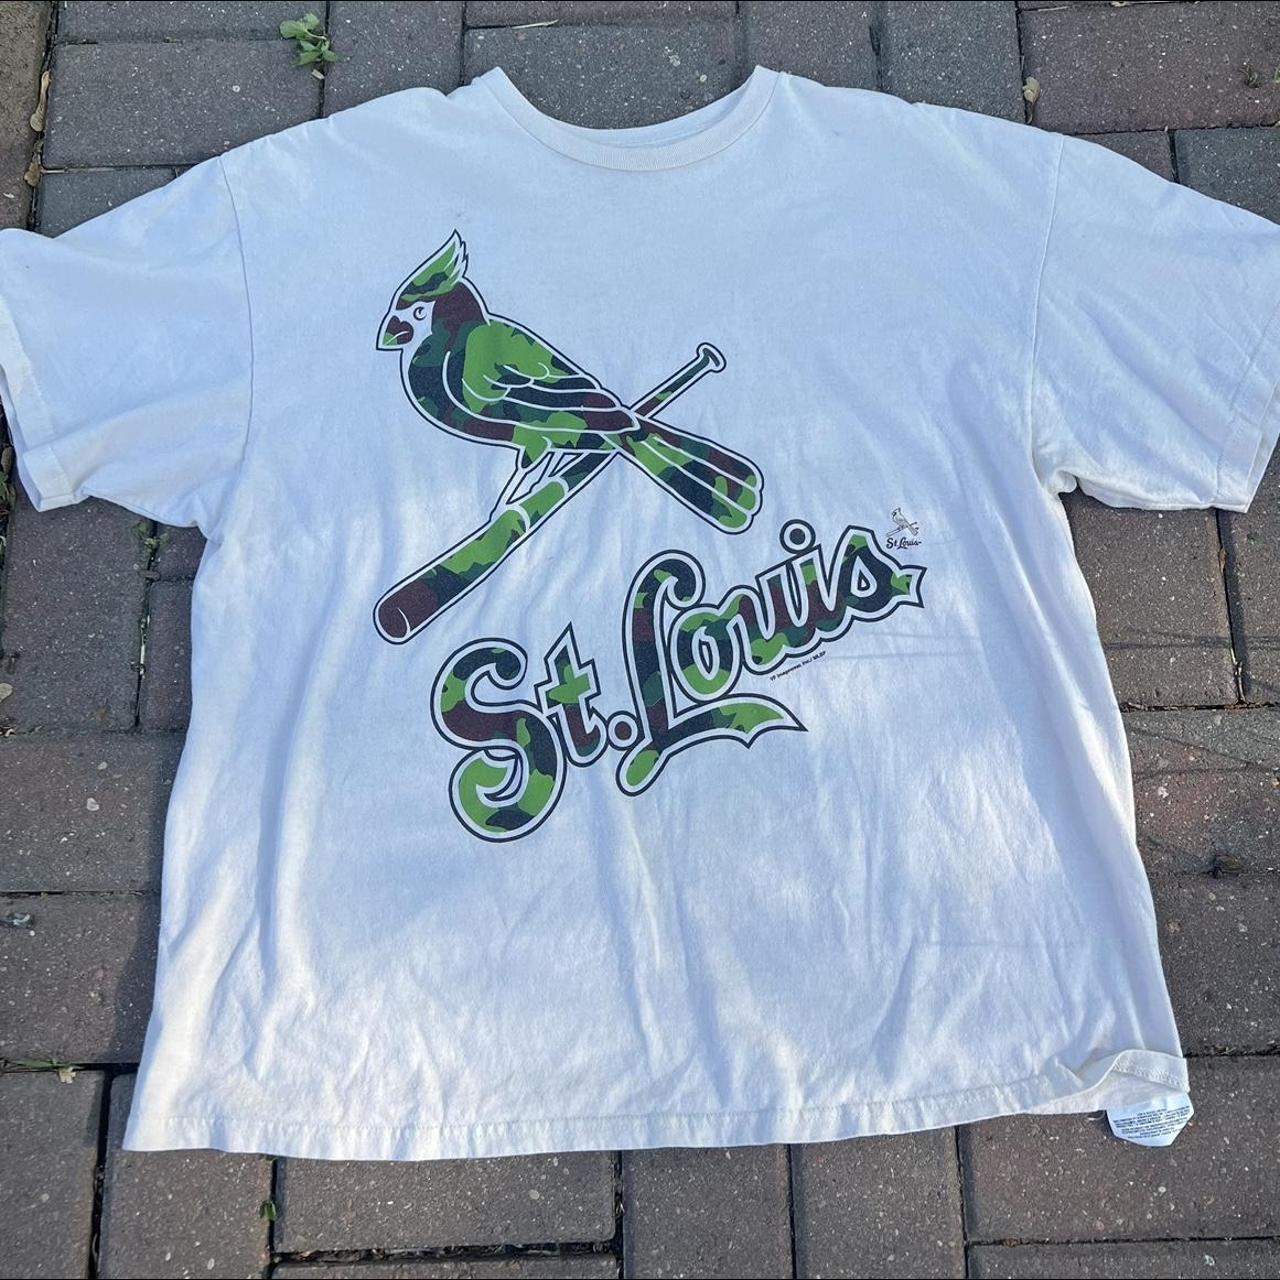 MLB T-Shirt - St. Louis Cardinals, 2XL